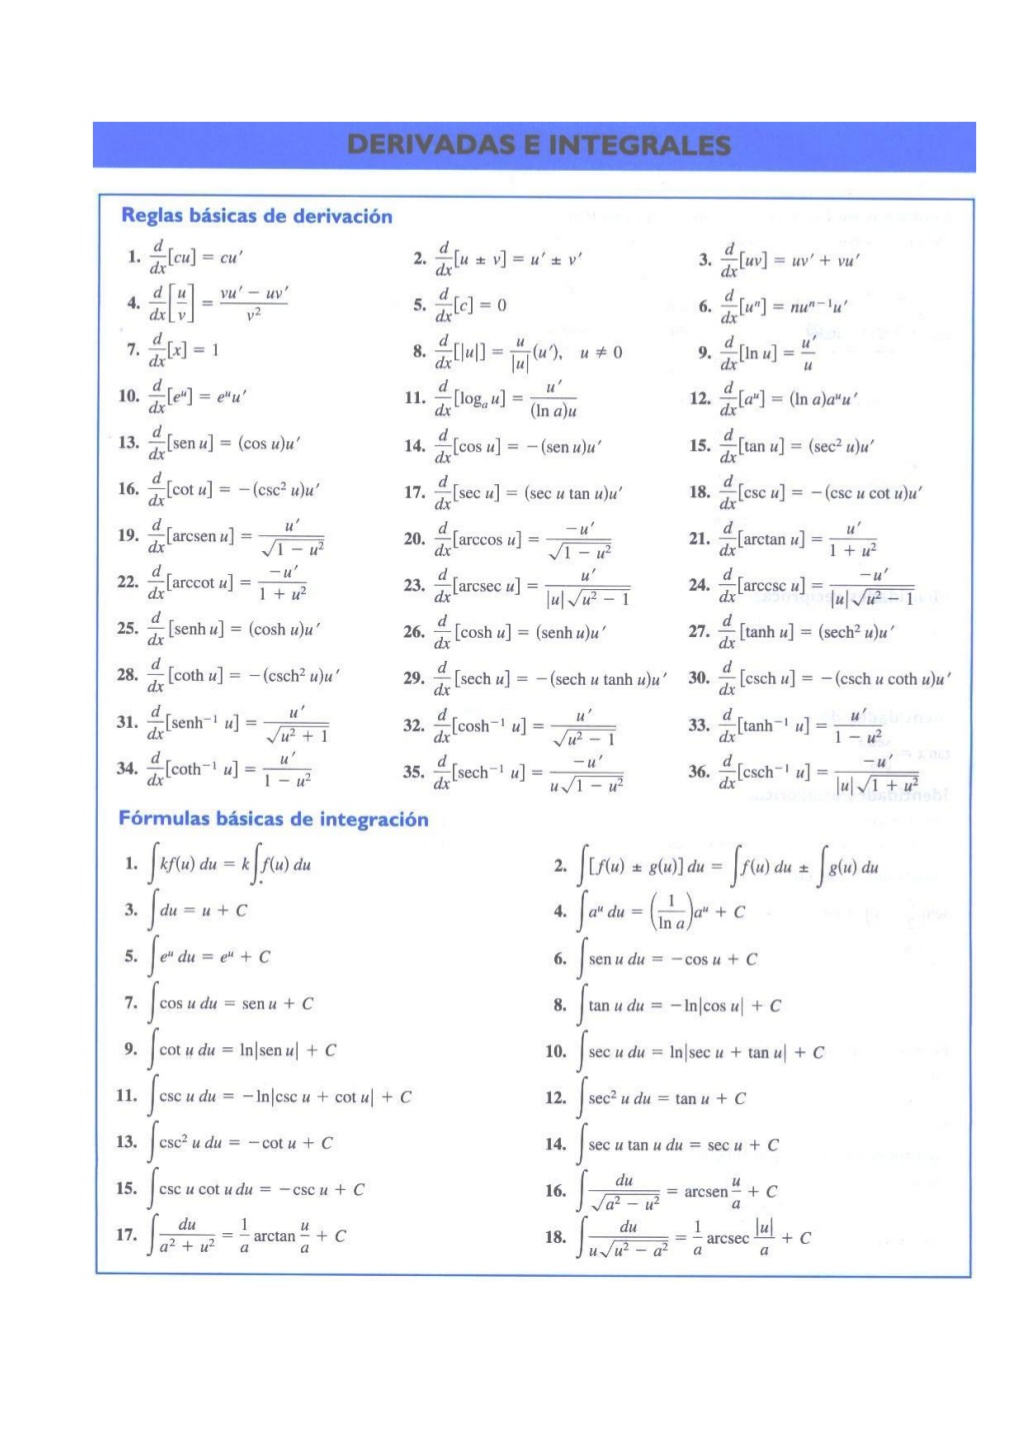 Formulas De Derivadas E Integrales 1 1024 Tabela De Derivadas E Integrais 1914